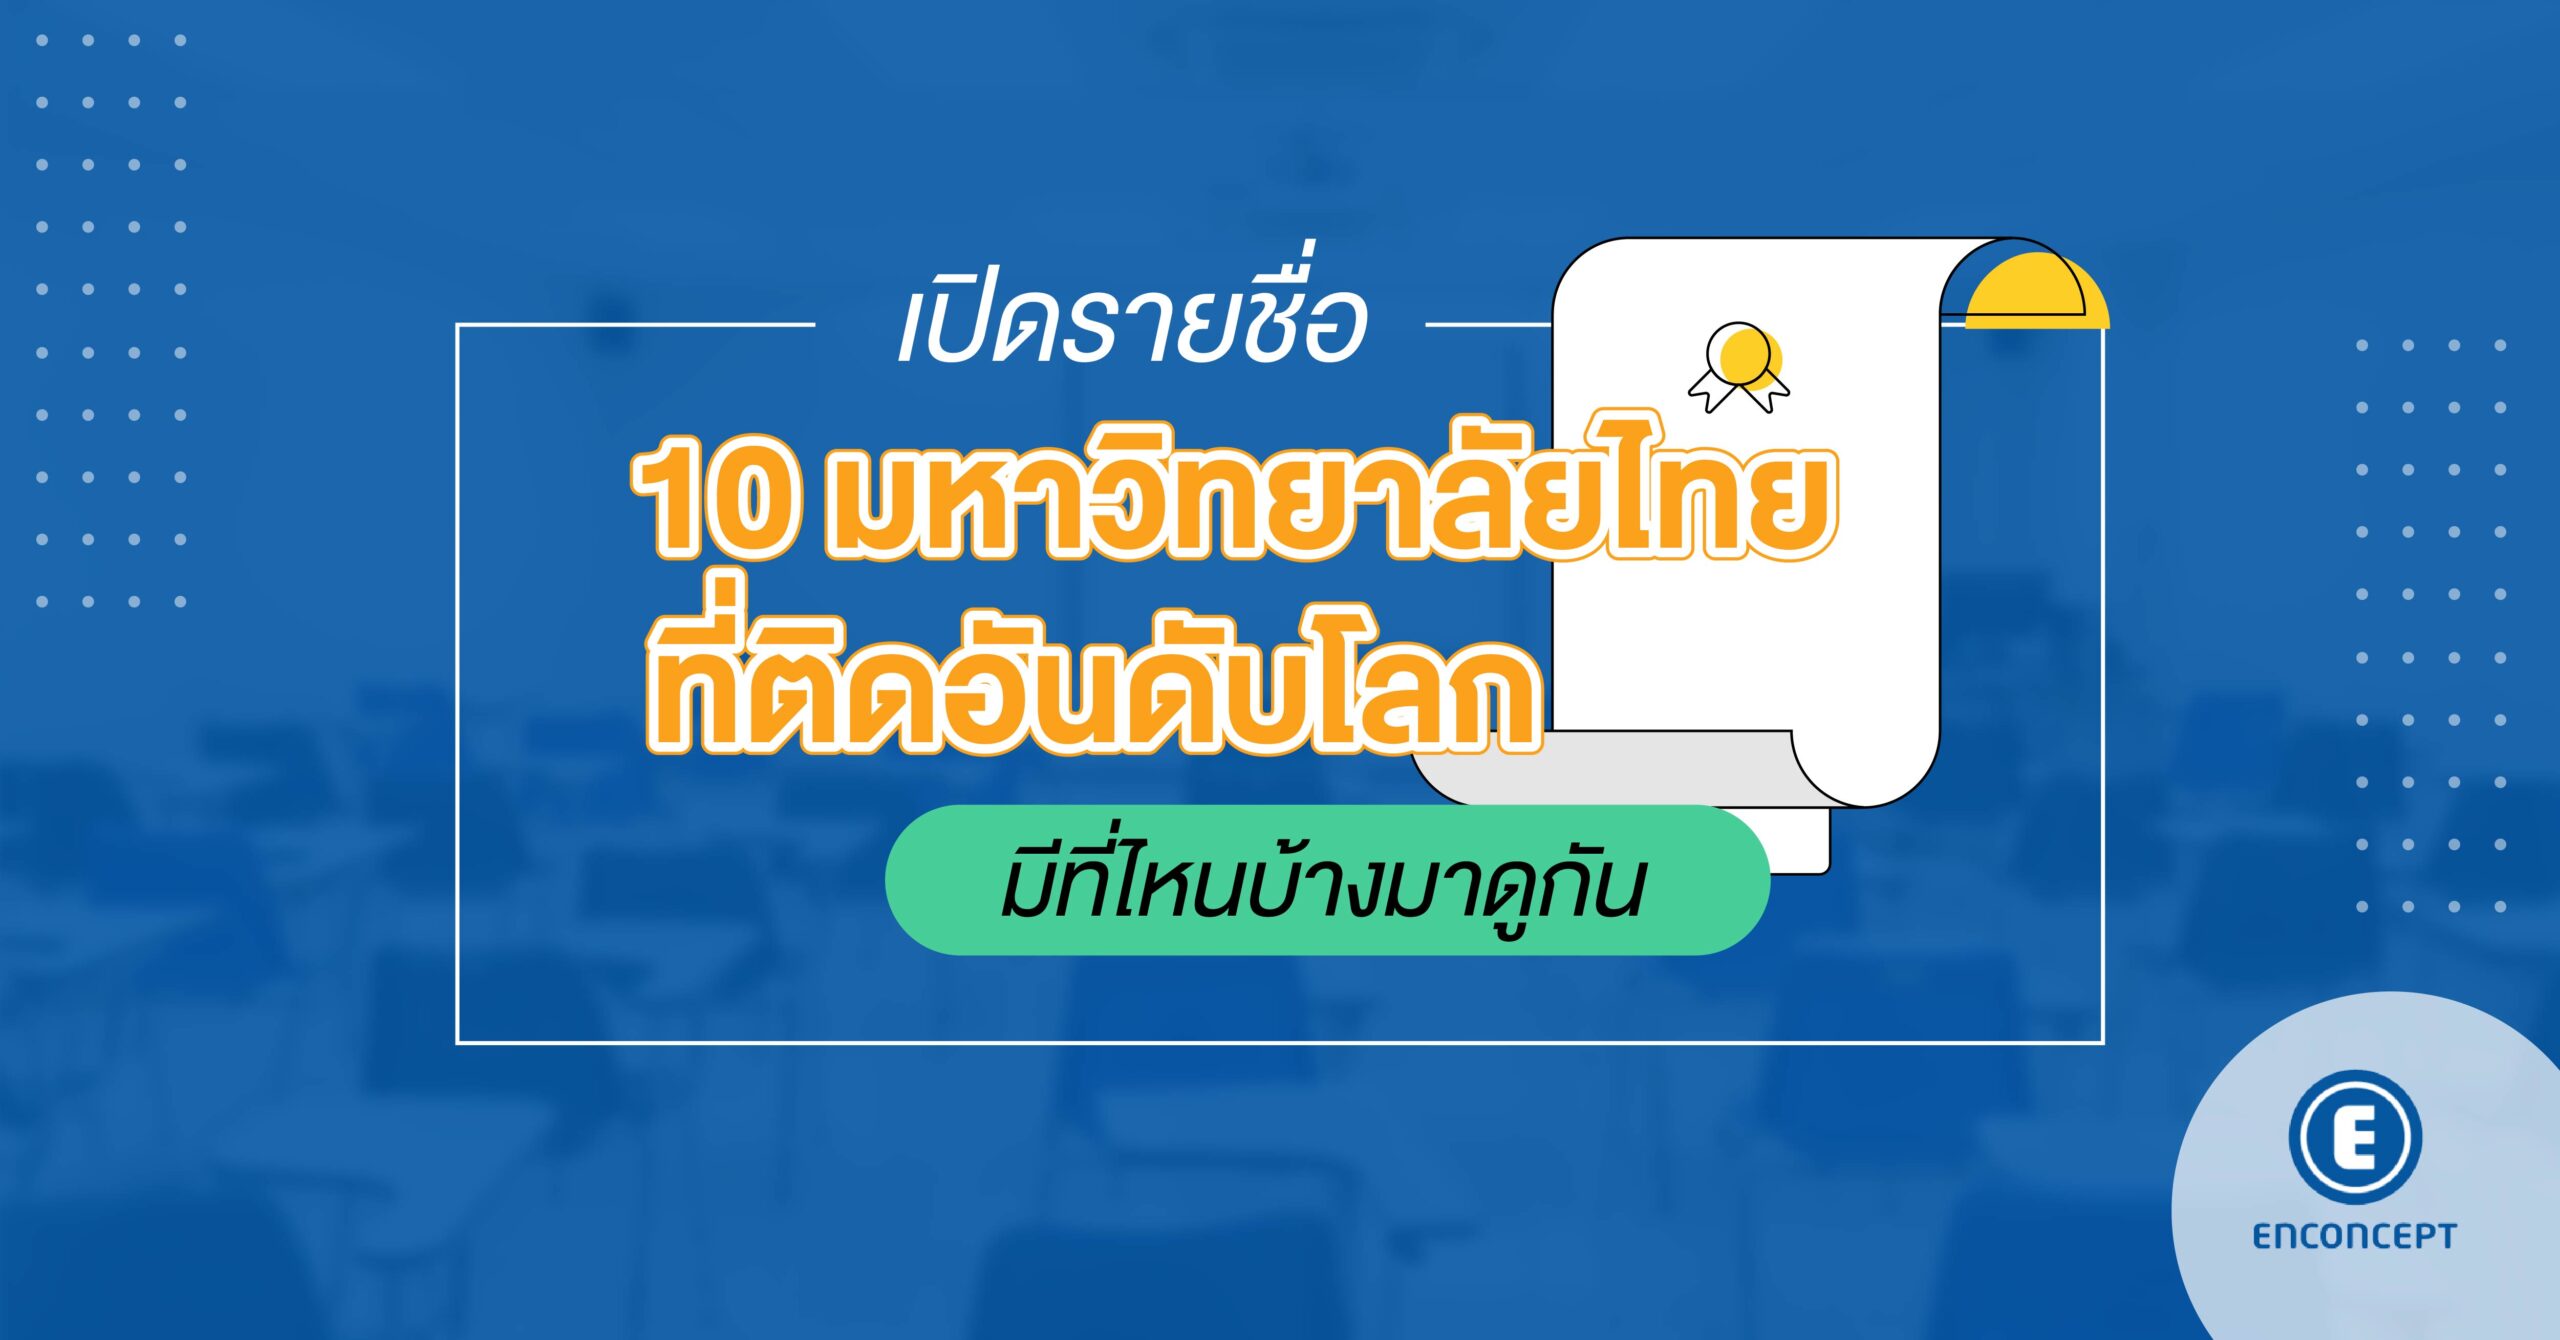 10 มหา ลัย ที่ ดี ที่สุด ใน ประเทศไทย